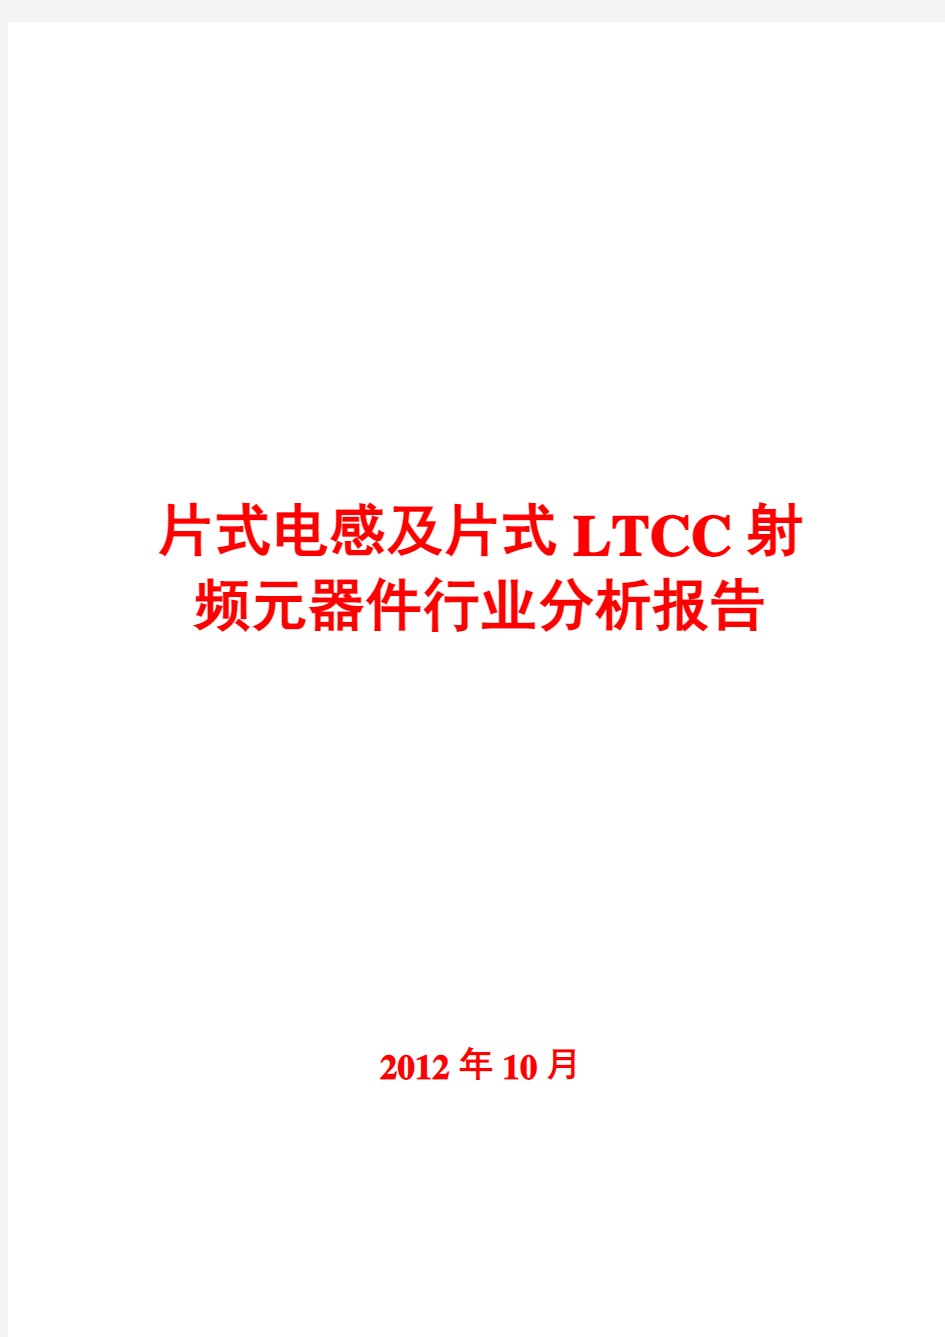 2012年片式电感及片式LTCC射频元器件行业分析报告